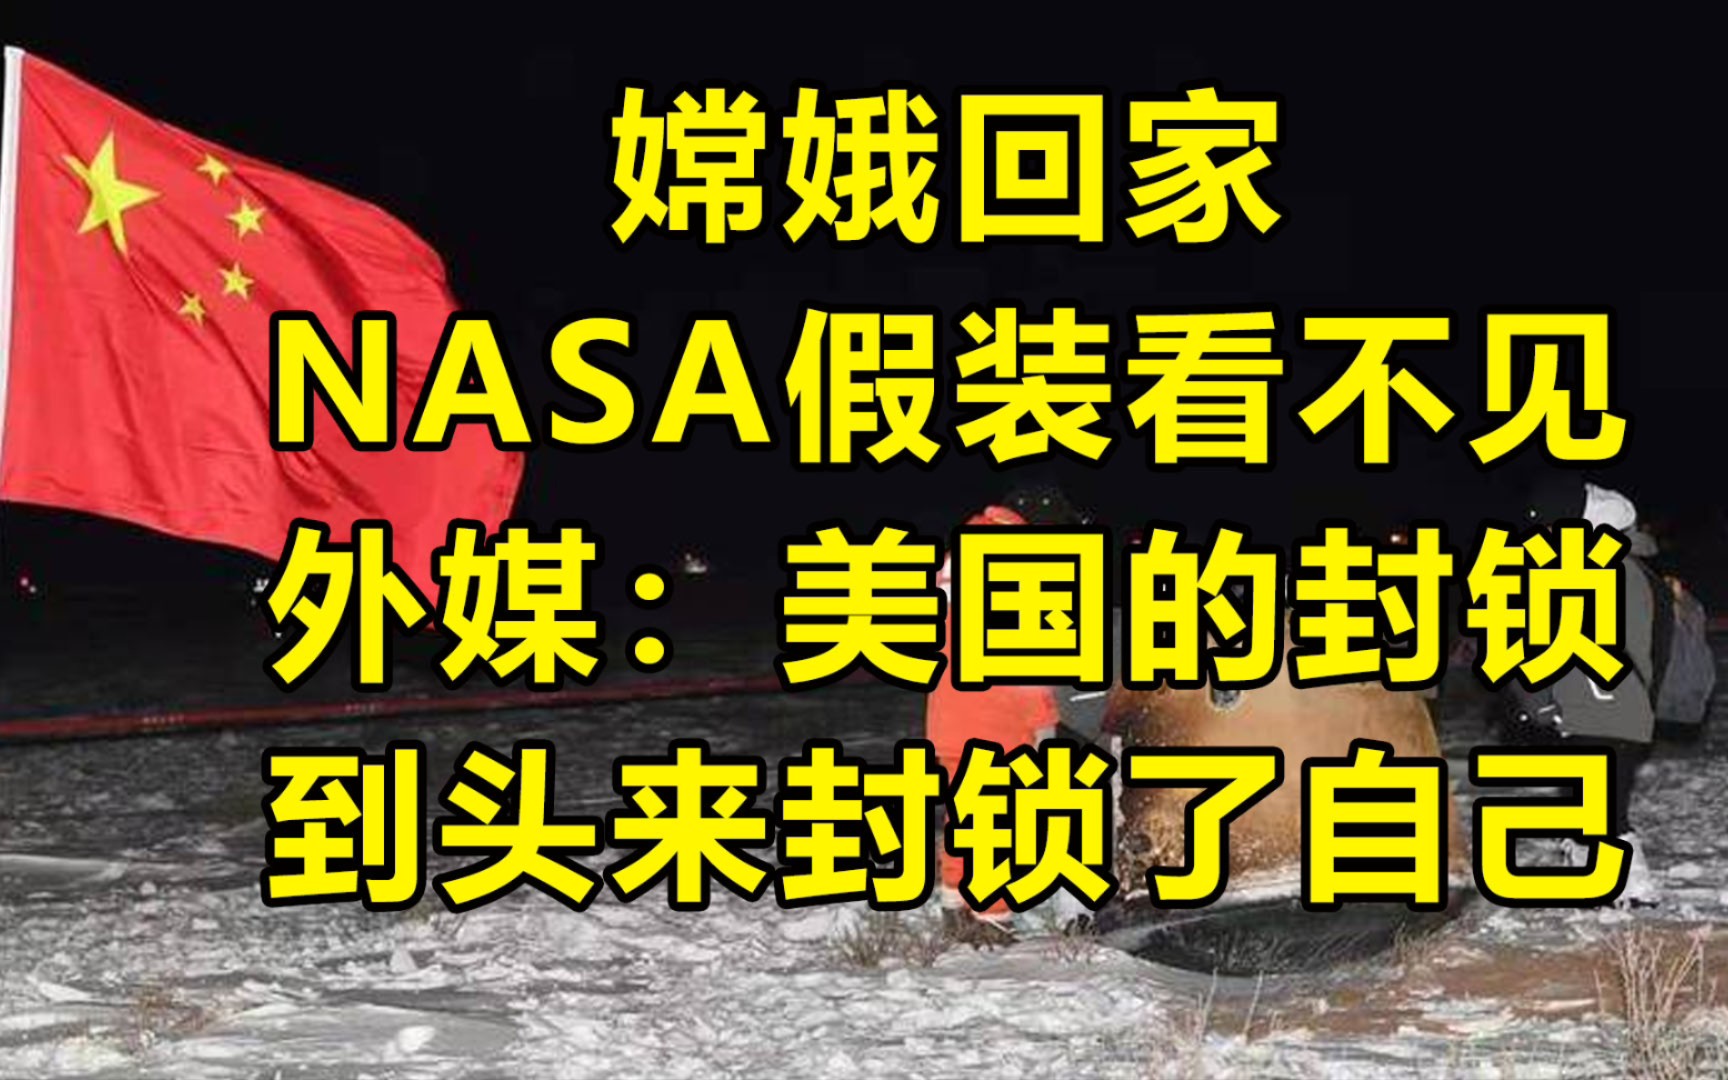 嫦娥回家 外媒:美国以为能封锁中国，结果封了自己